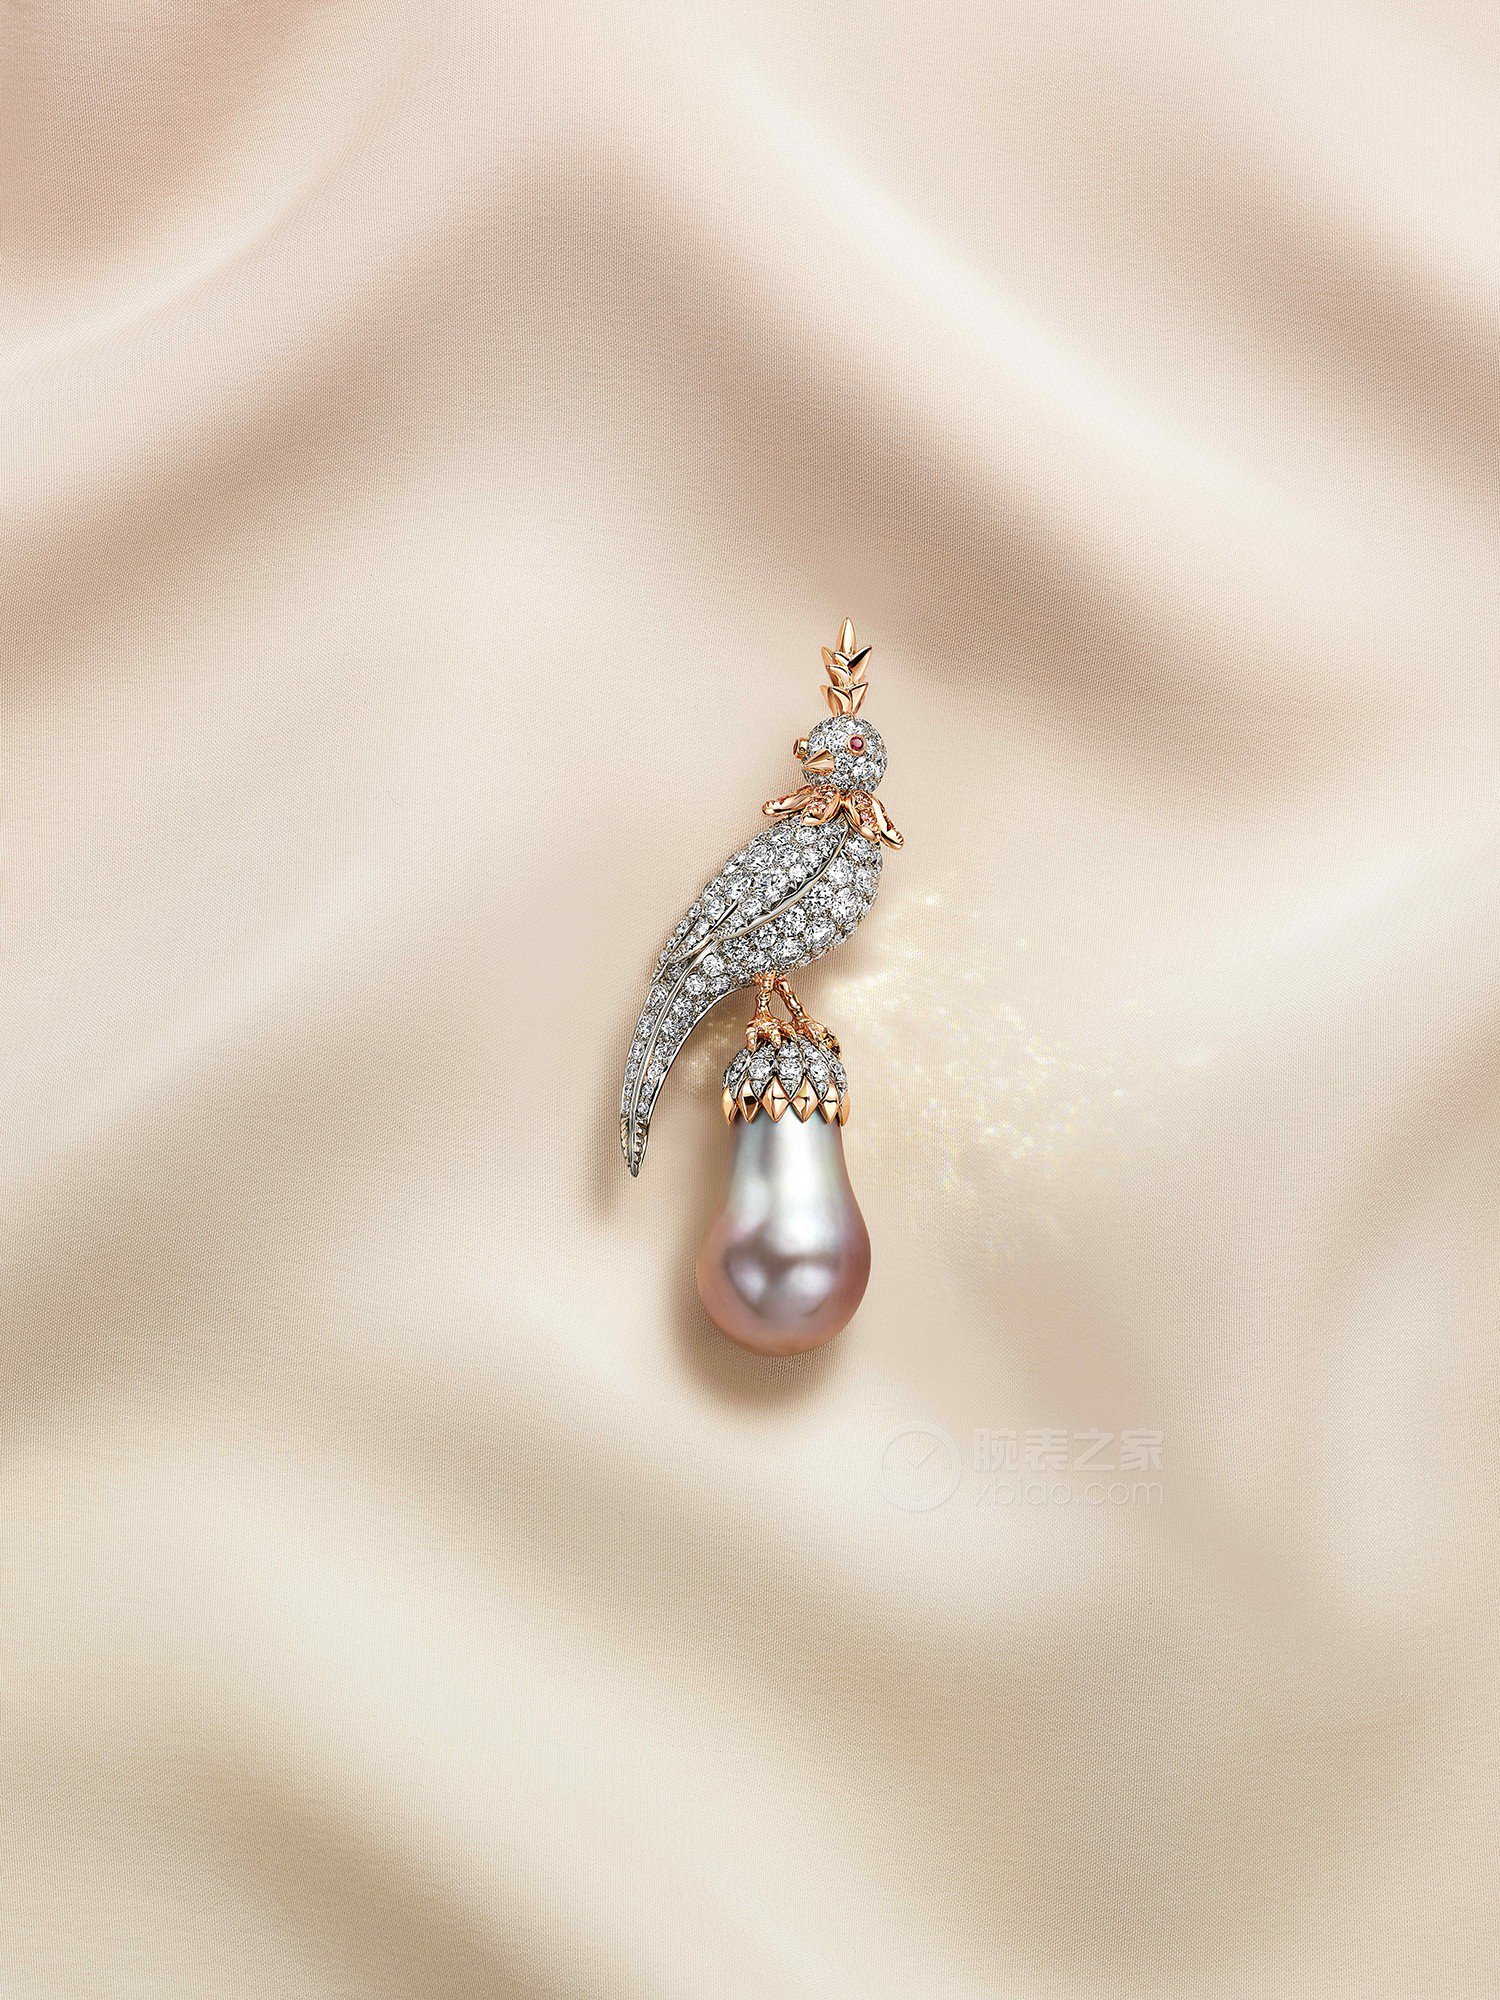 蒂芙尼史隆伯杰系列18K玫瑰金及铂金镶嵌浅灰色水滴形天然野生珍珠，香槟色钻石，钻石及红宝石胸针胸针